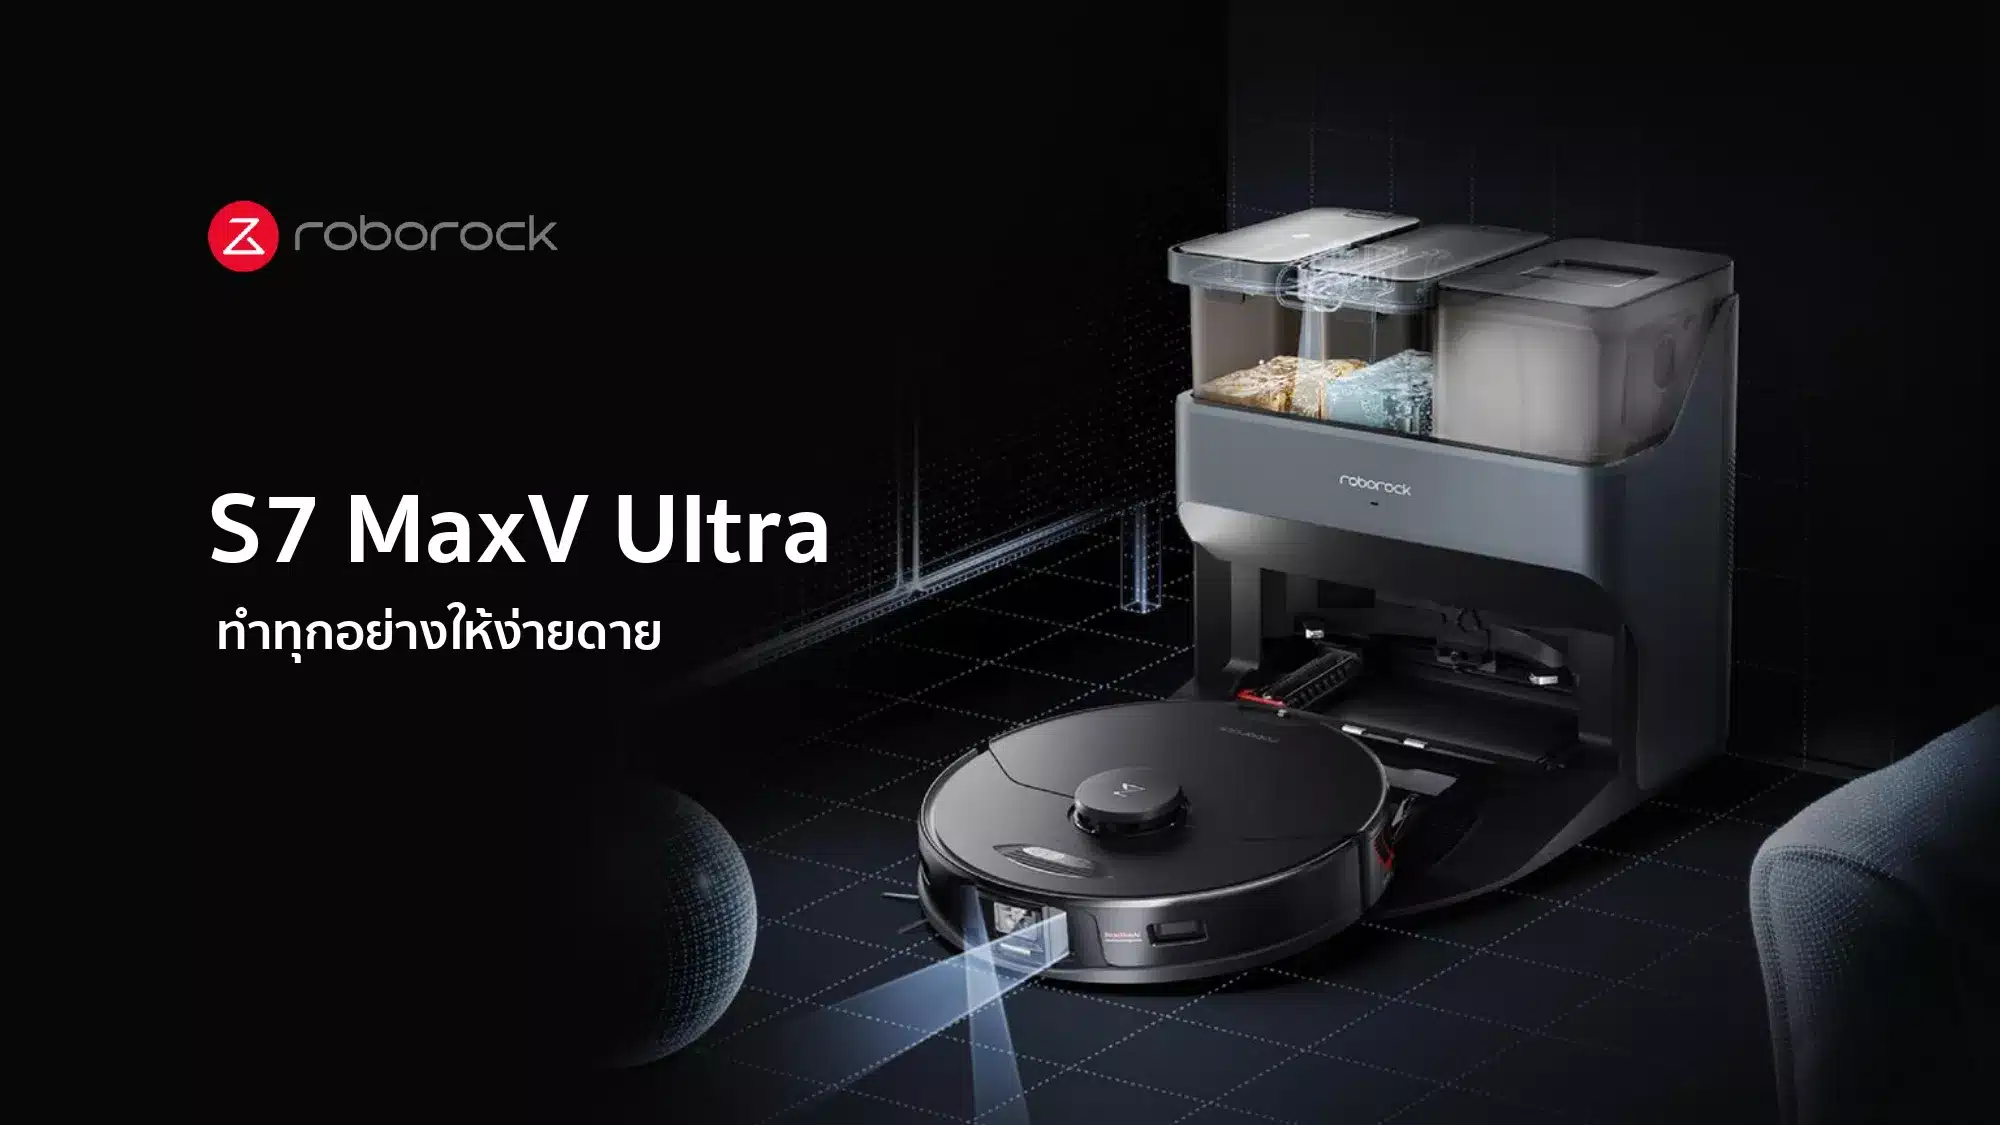 ประหยัดแรง ประหยัดเวลา Roborock S7 MaxV Ultra กวาดถูได้ ไม่ต้องทำเอง